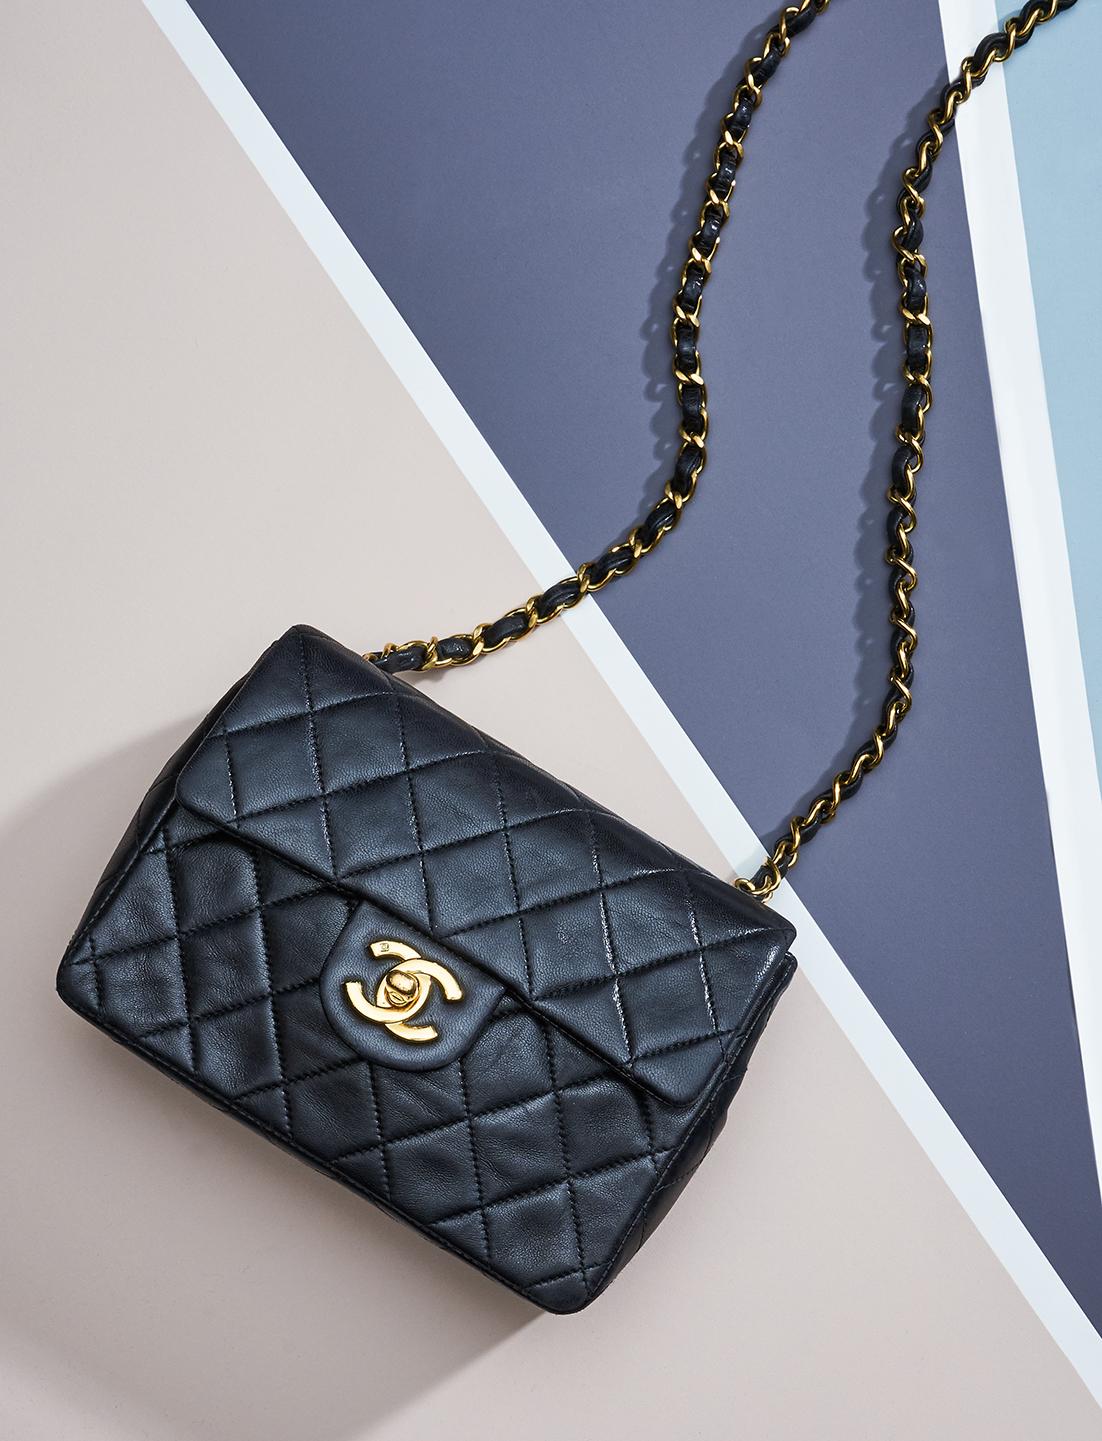 Chanel Handbag Pictures - Chanel Handbag Price Ukulele | Bodenuwasusa